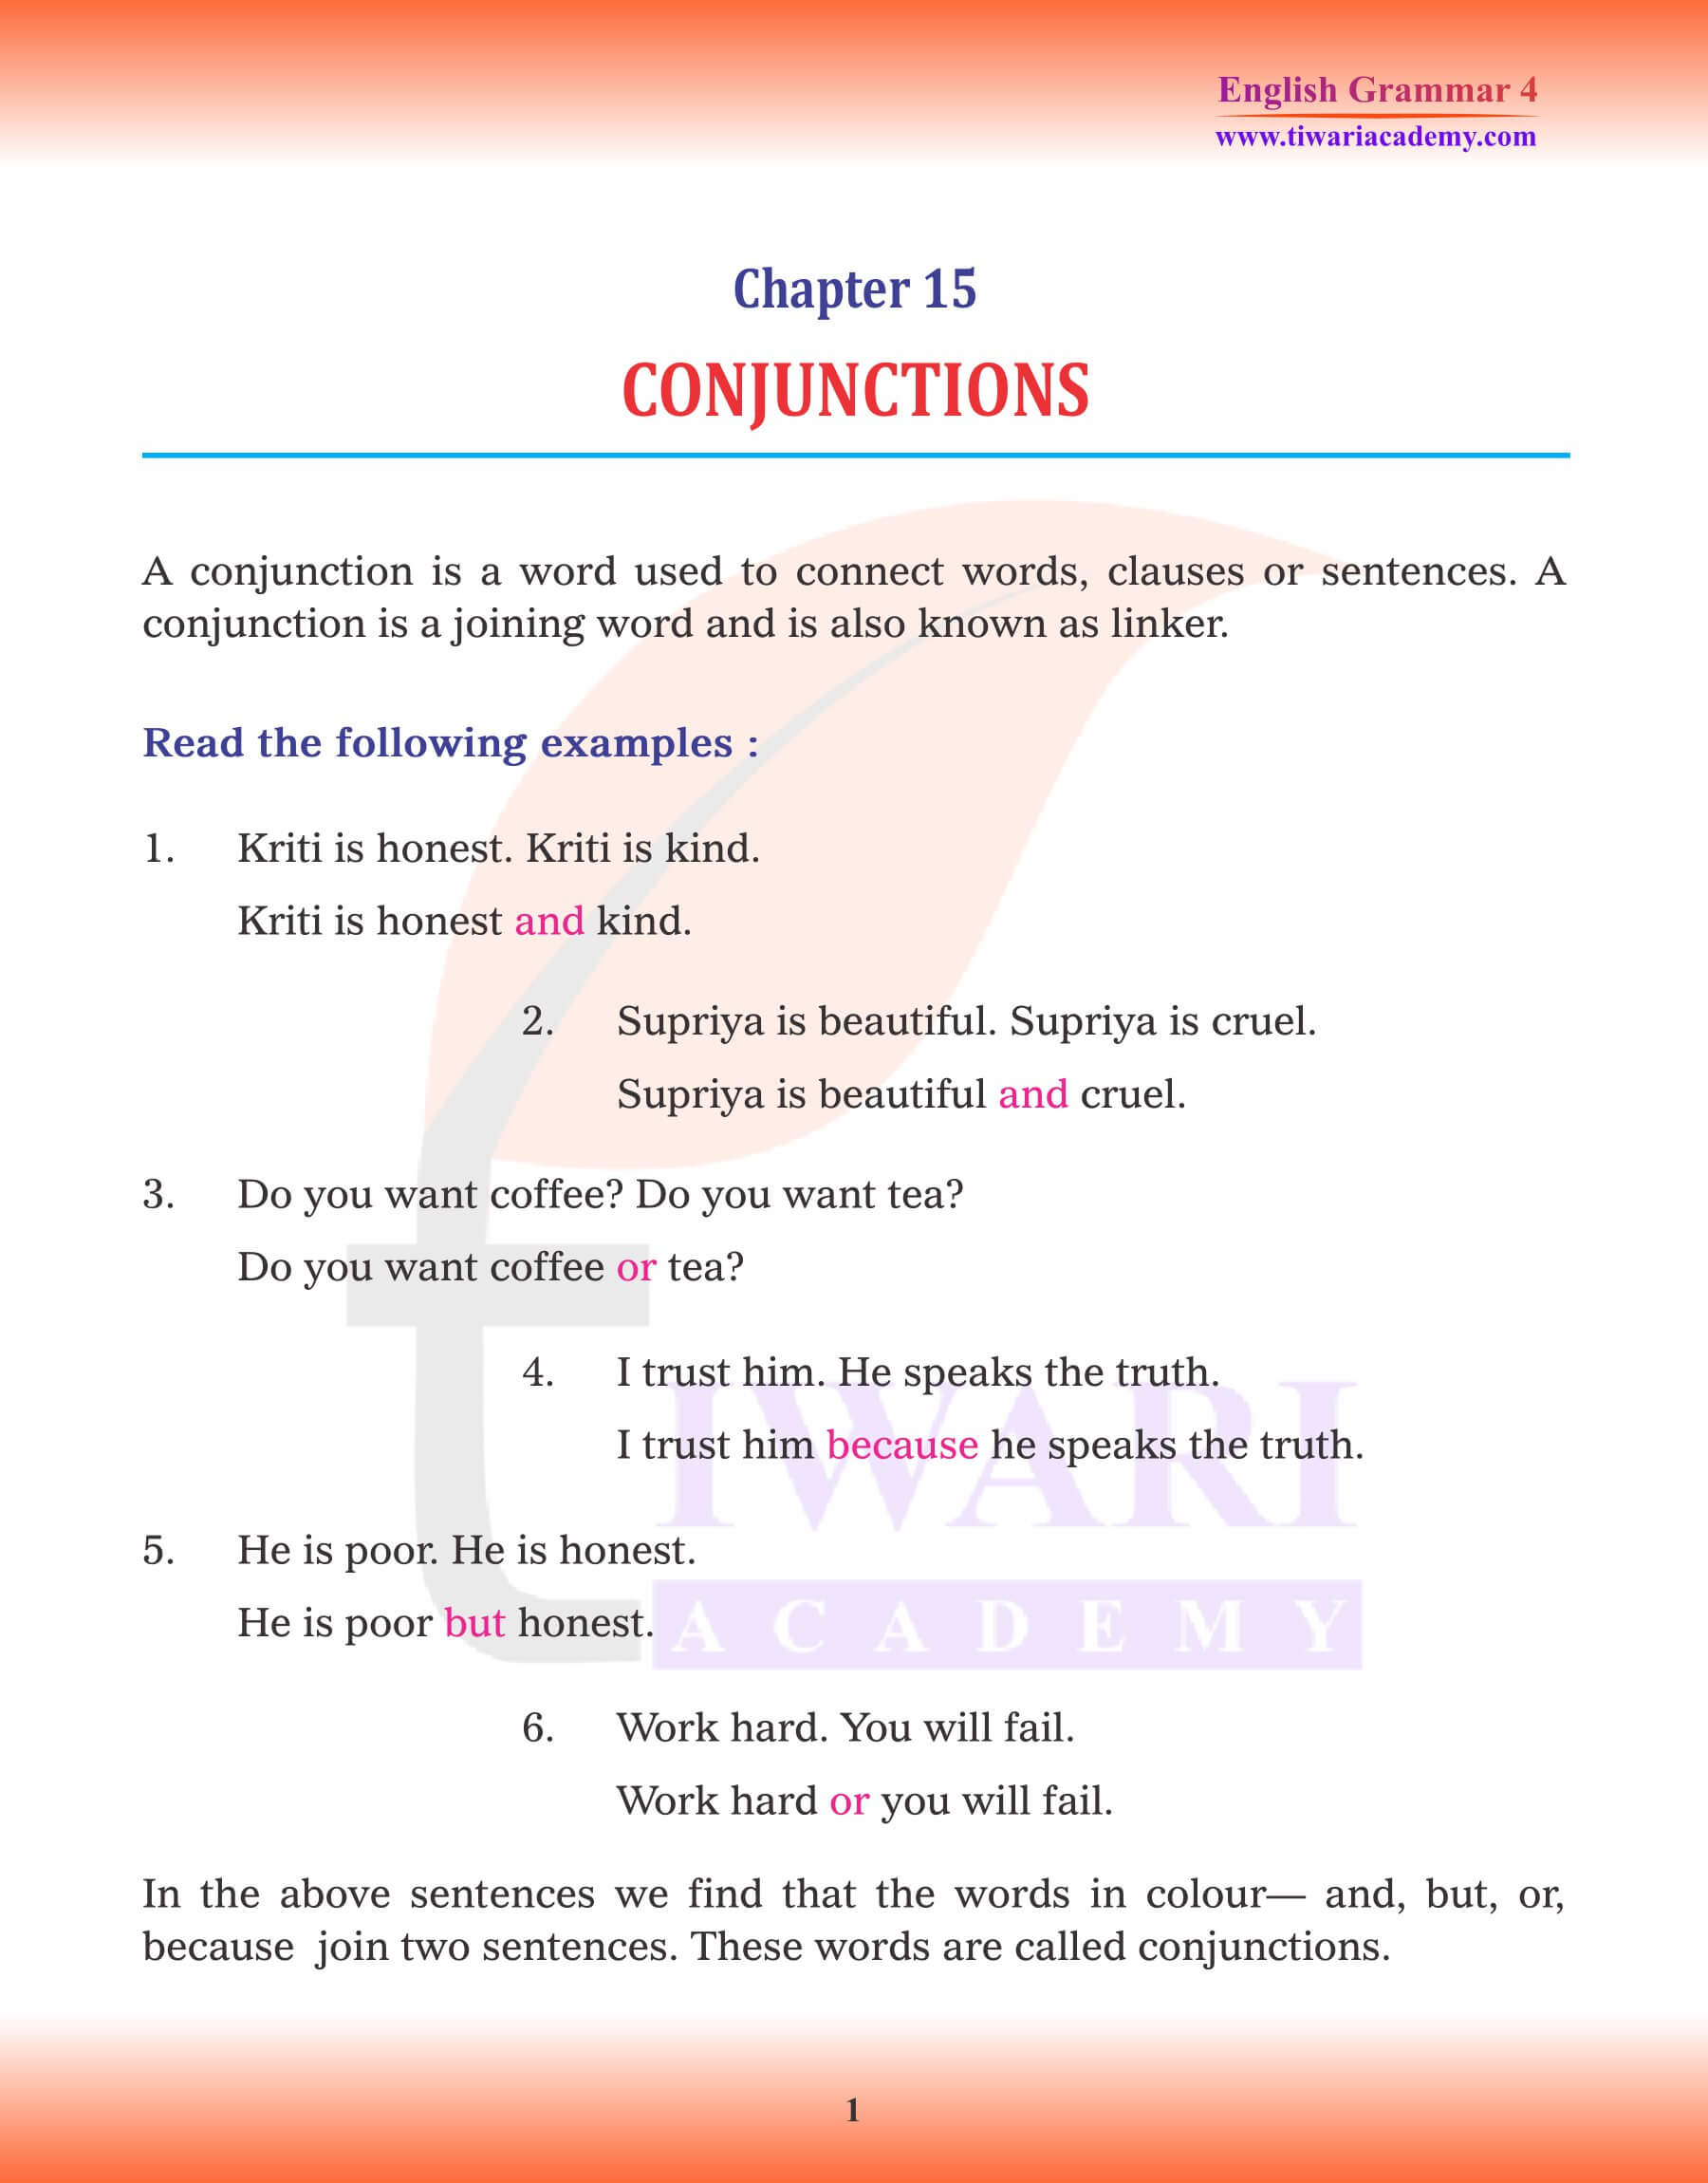 Class 4 Grammar Chapter 15 Conjunctions